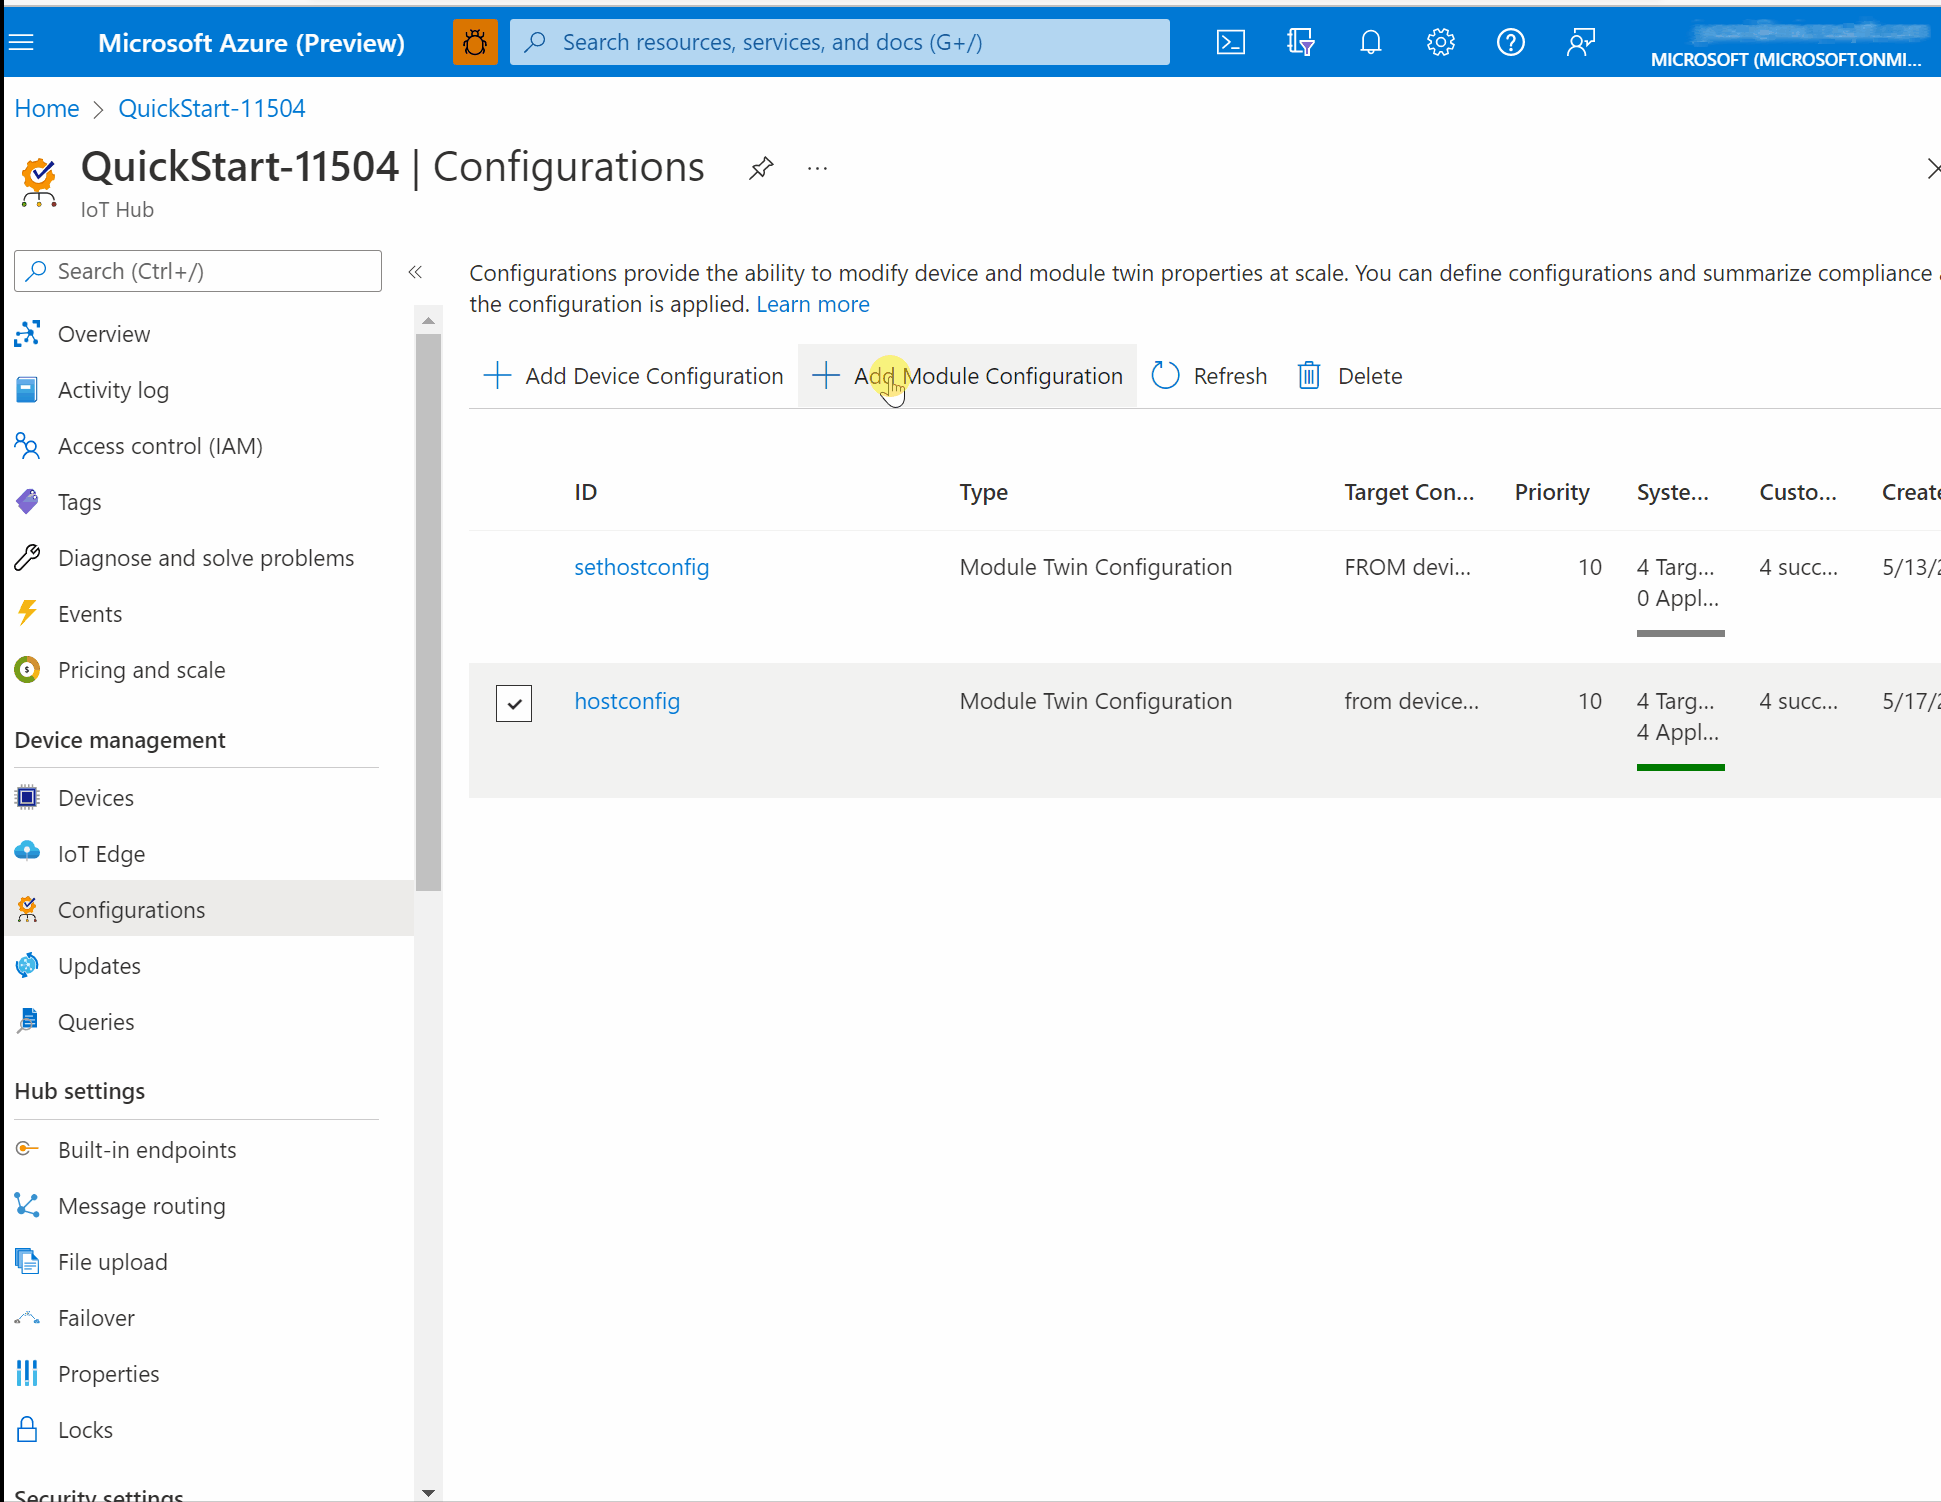 Captura de tela mostrando a criação de uma configuração do Portal do Azure com configurações de PackageManagerConfiguration